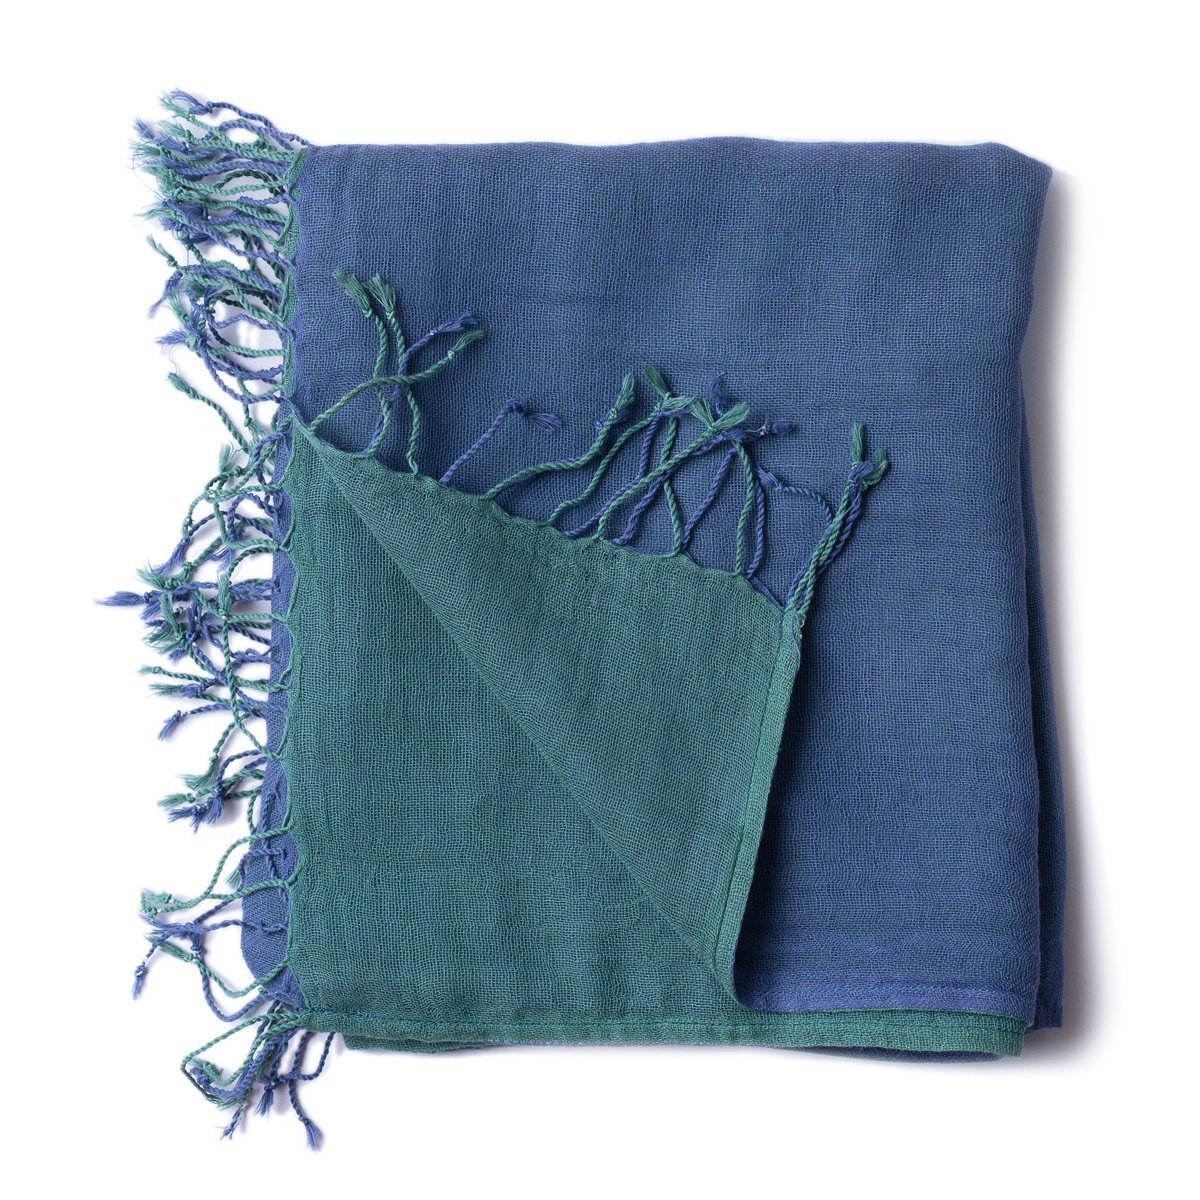 PANASIAM Halstuch elegantes Schultertuch zweifarbig auch als Schal oder Stola tragbar, in schönen farbigen Designs mit kleinen Fransen aus Baumwolle blau grün | Halstücher